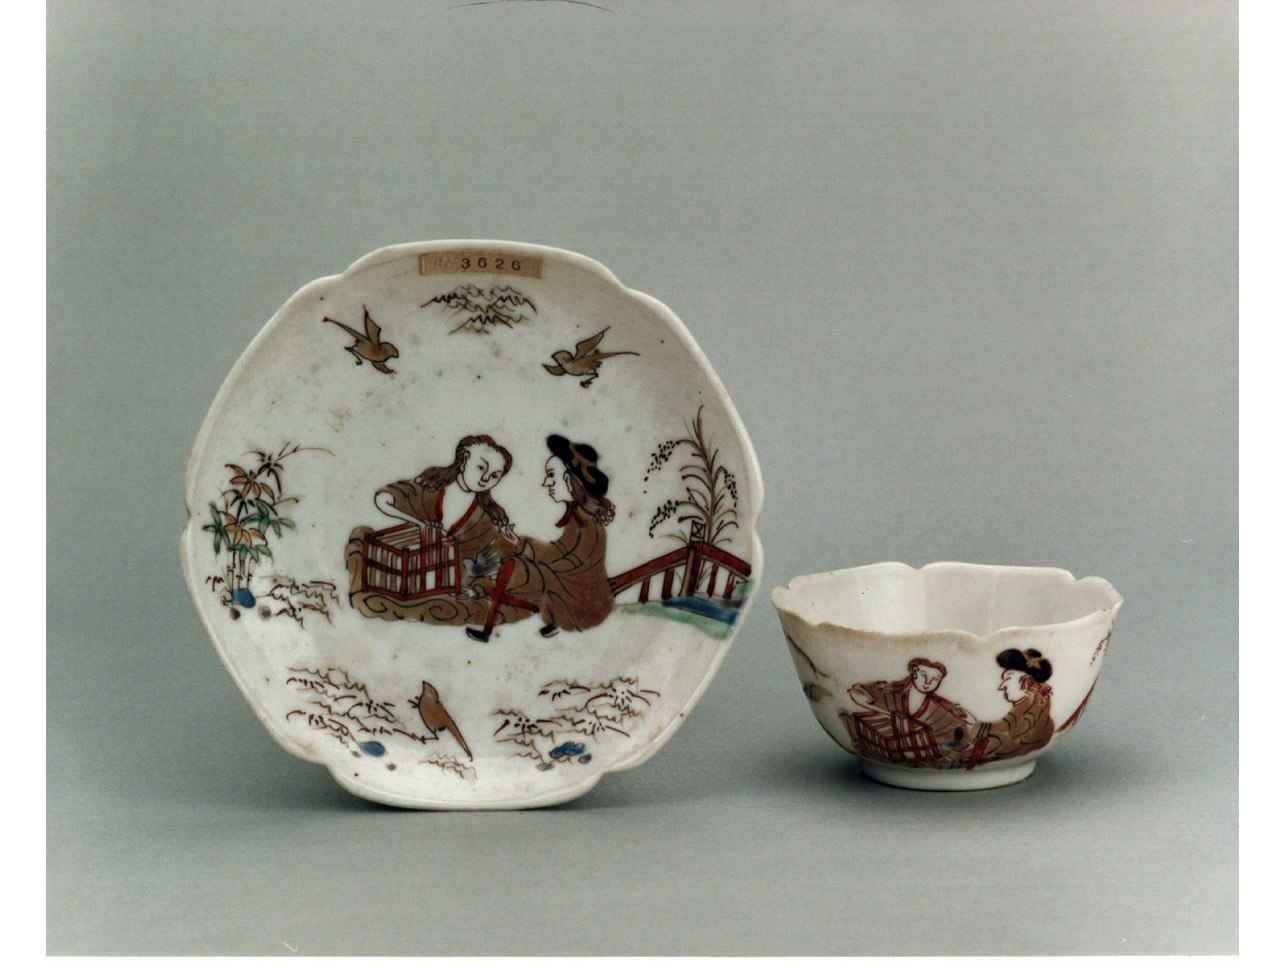 coppia di orientali in giardino (piattino) - manifattura cinese (sec. XVIII)